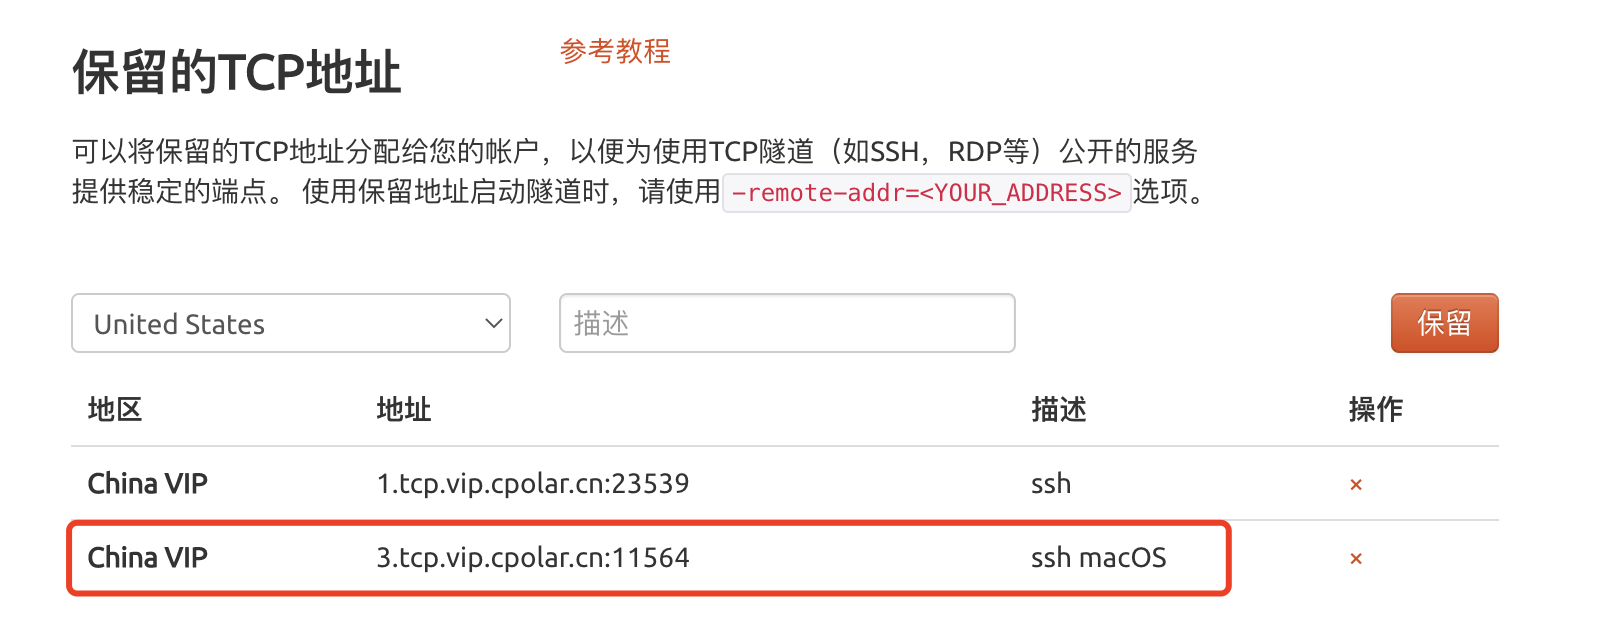 公网使用SSH远程登录macOS服务器的方法是什么